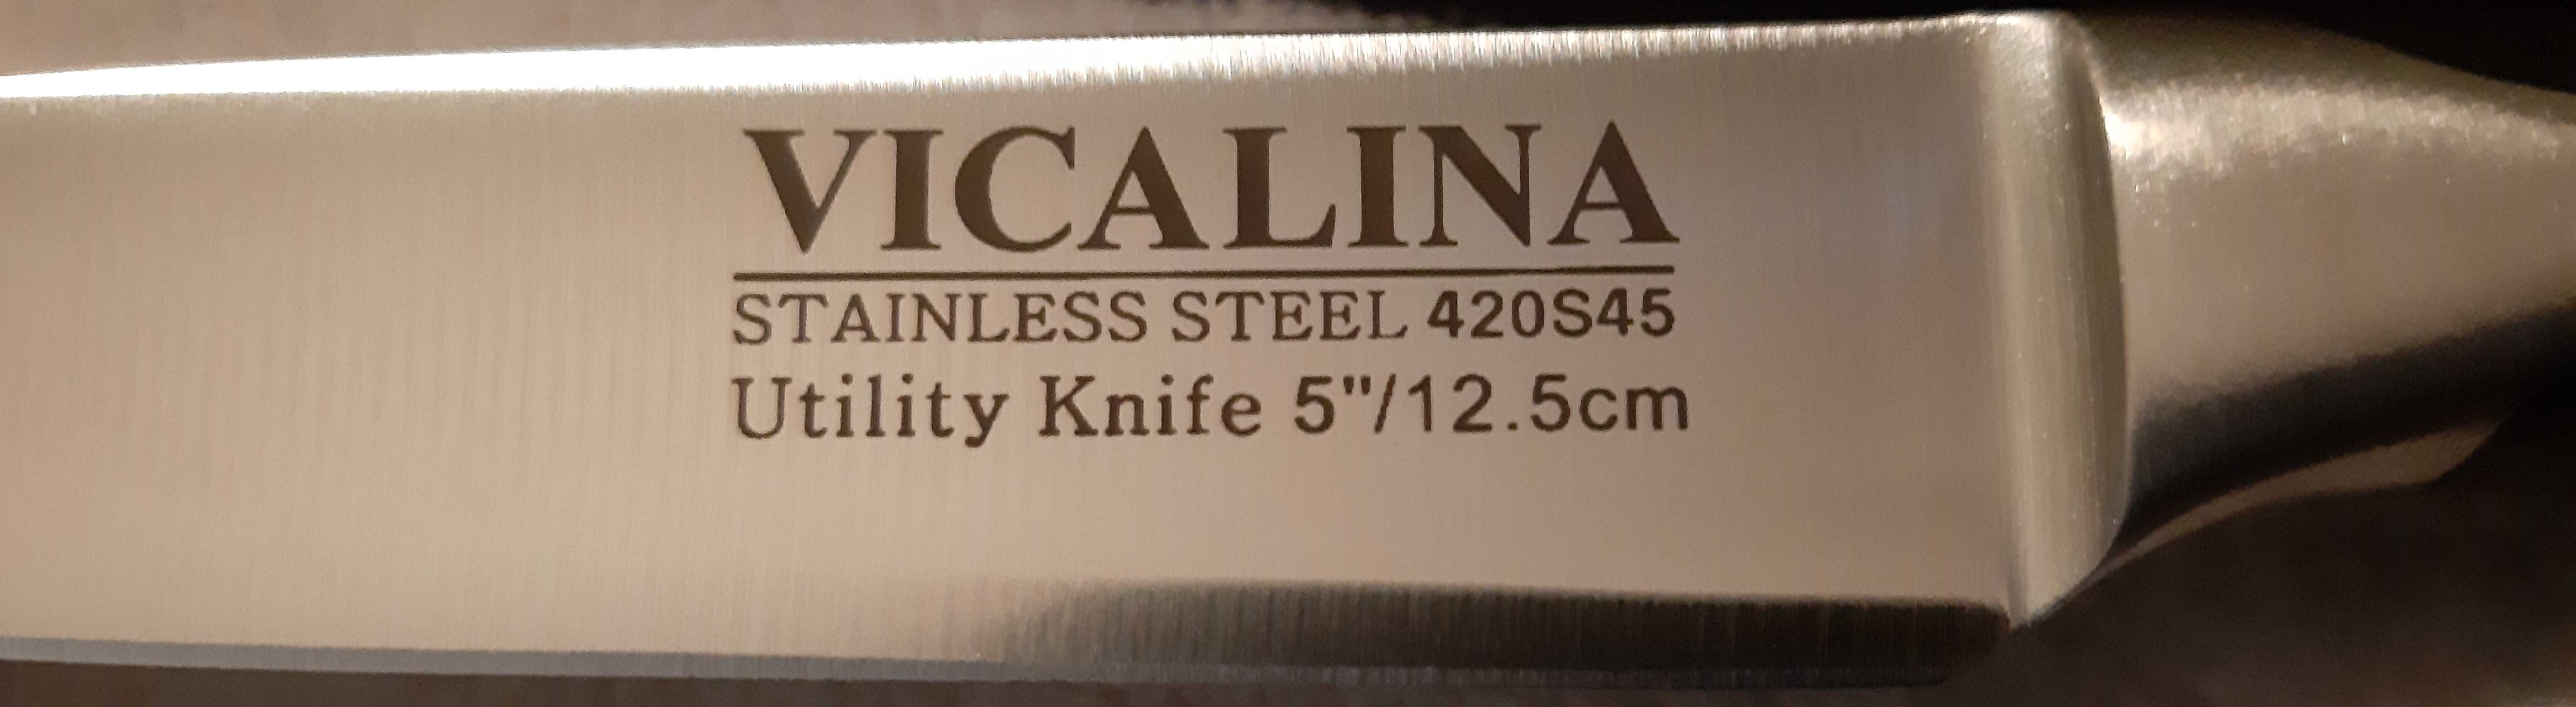 Ножи универсальные VICALINA и FISSMAN.12,5см.,9см.НОВЫЕ.ДОСТАВКА есть.